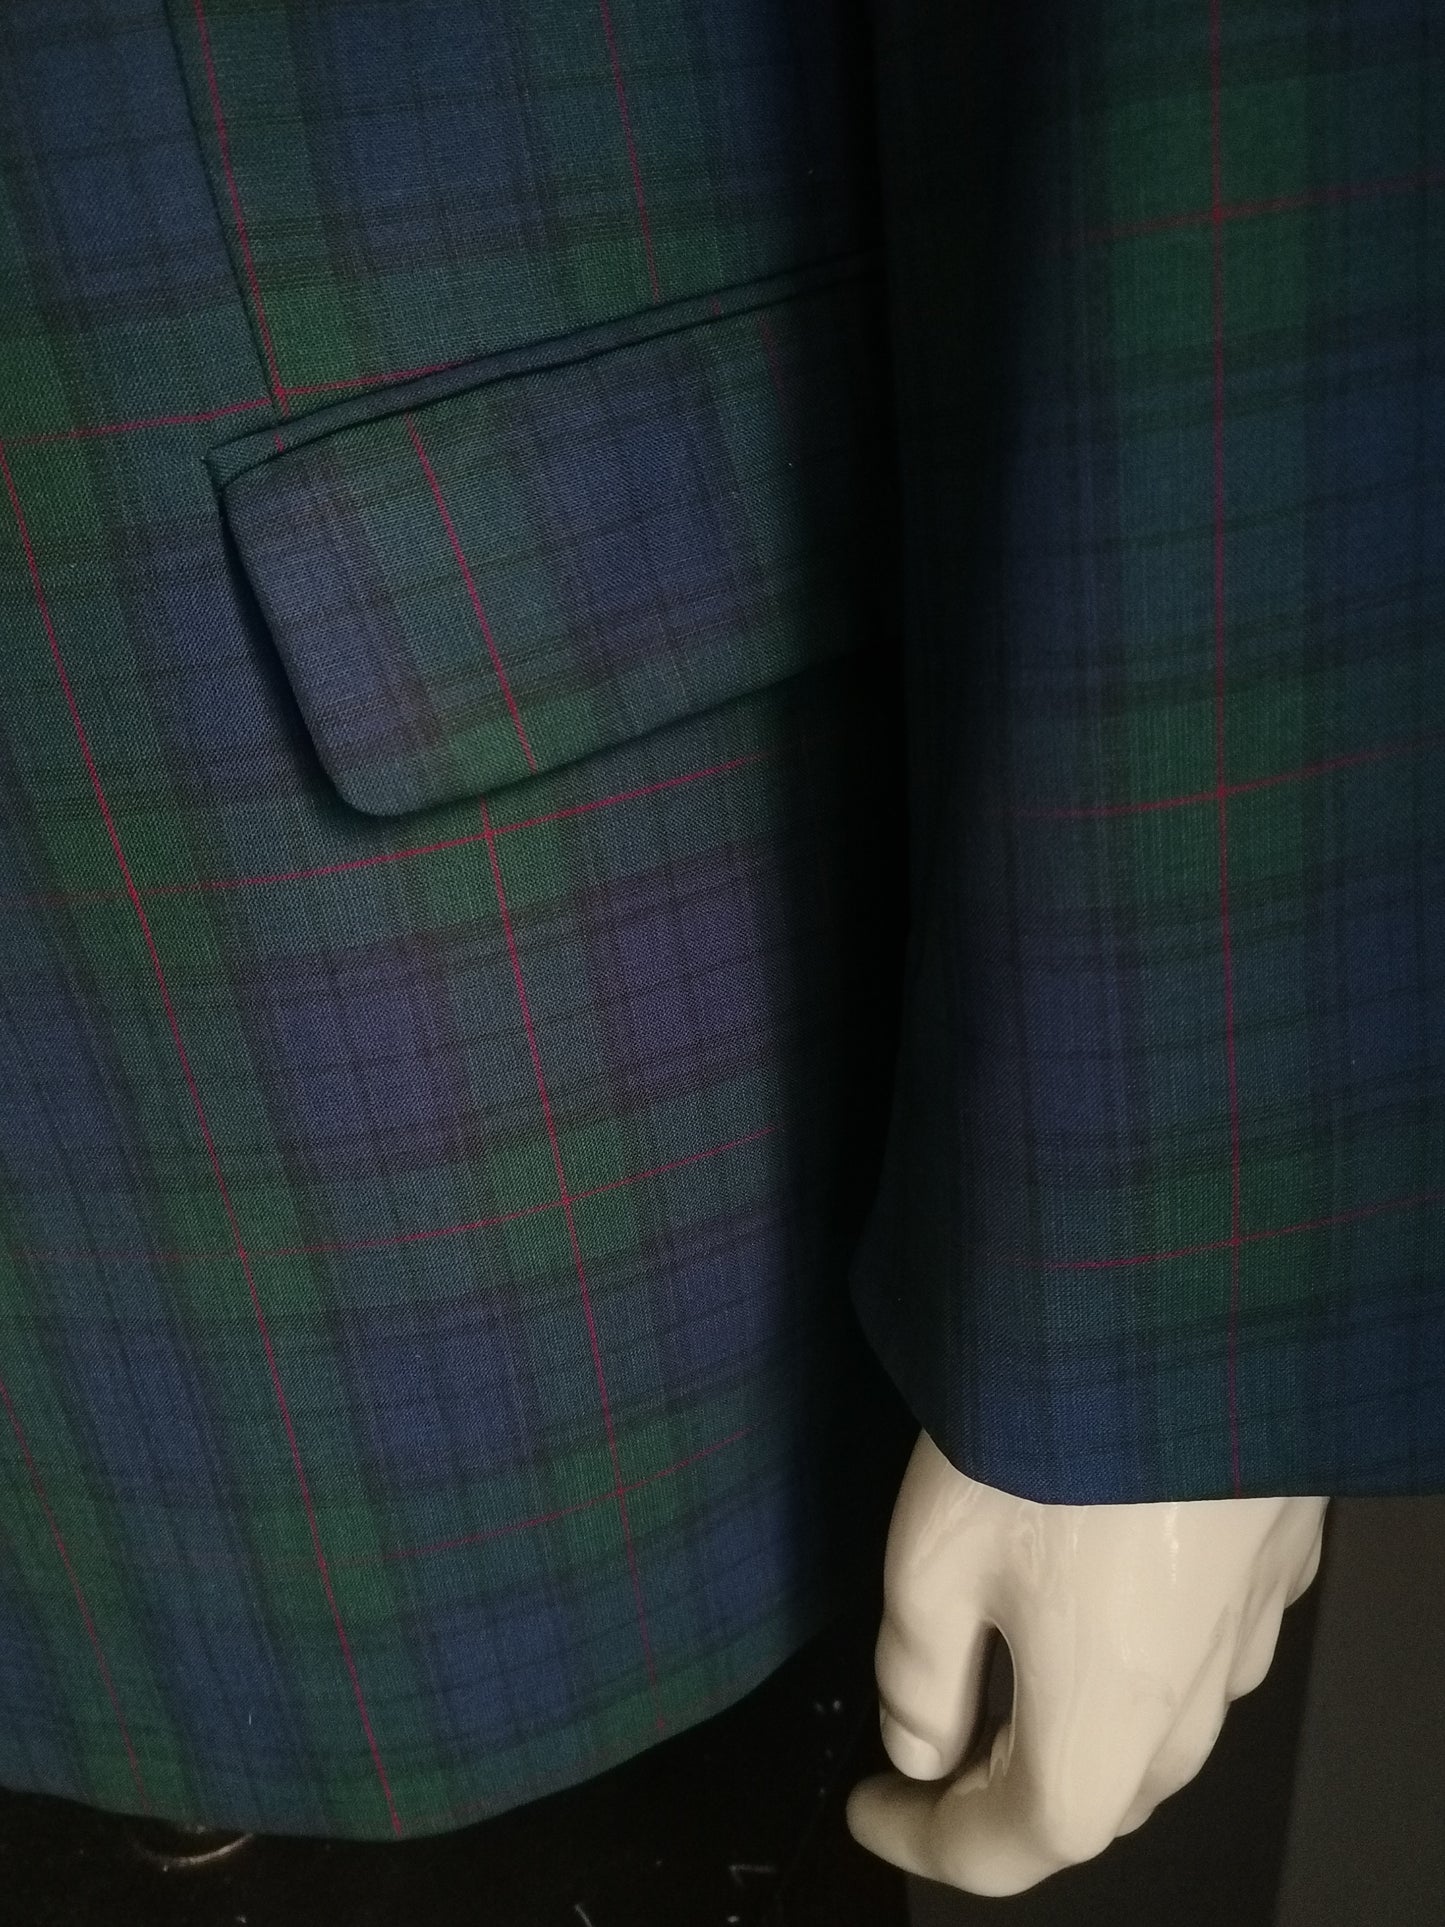 Transputo di lana di Pohland / Giacca a doppio petto. Rosso blu verde controllato. Dimensione 28 / (56 / XL)